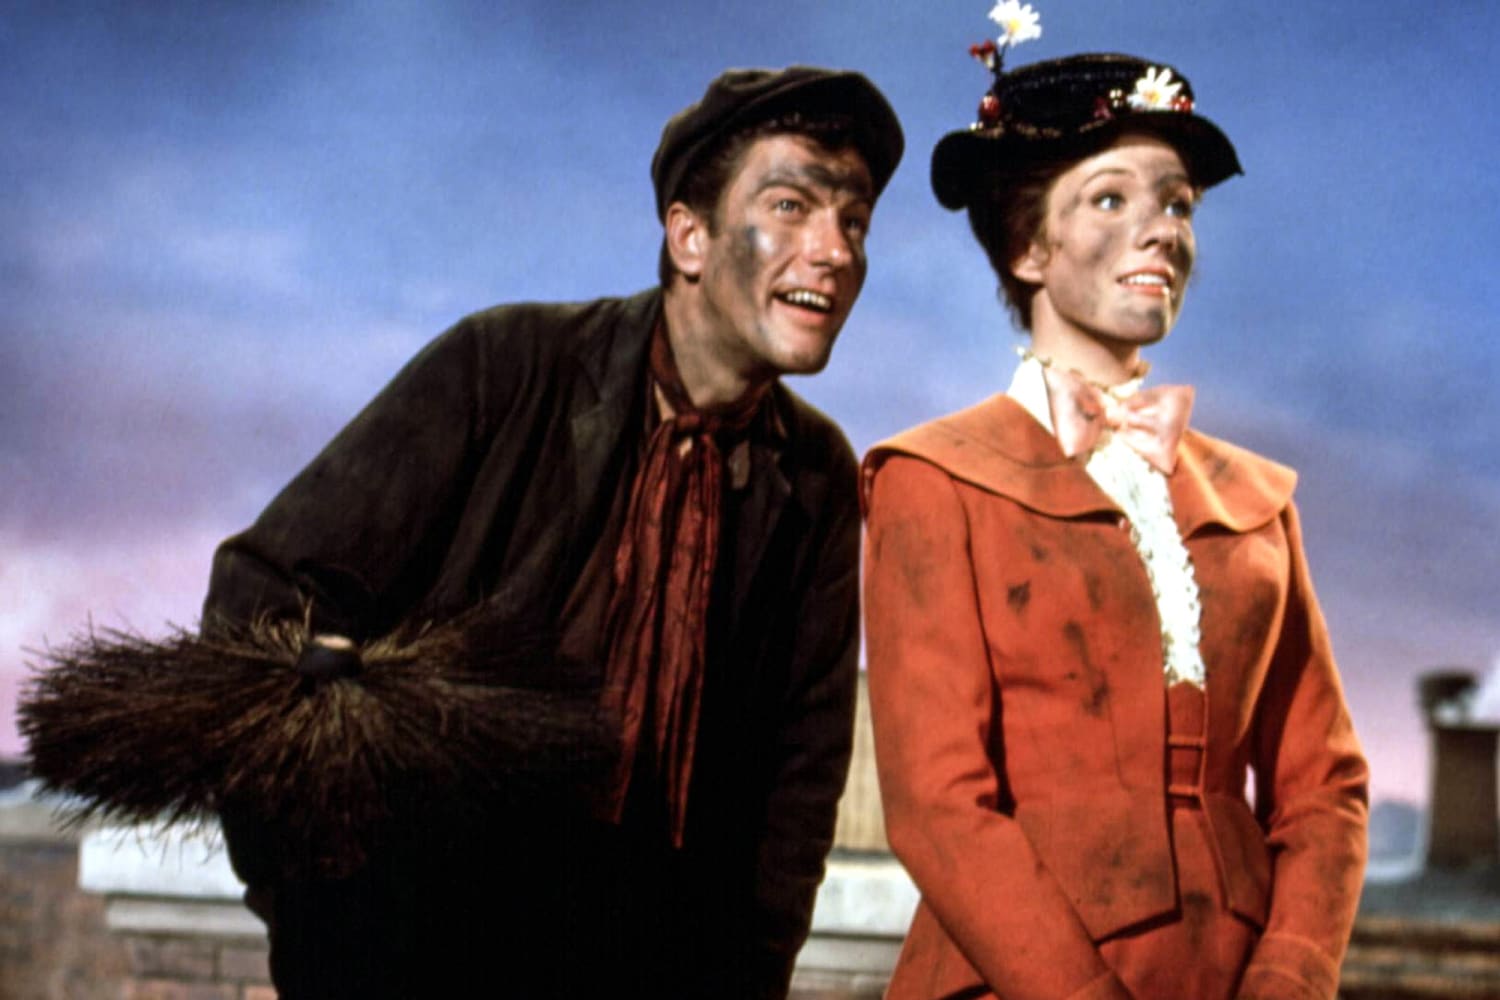 La calificación de edad de ‘Mary Poppins’ aumenta en el Reino Unido debido al ‘lenguaje discriminatorio’